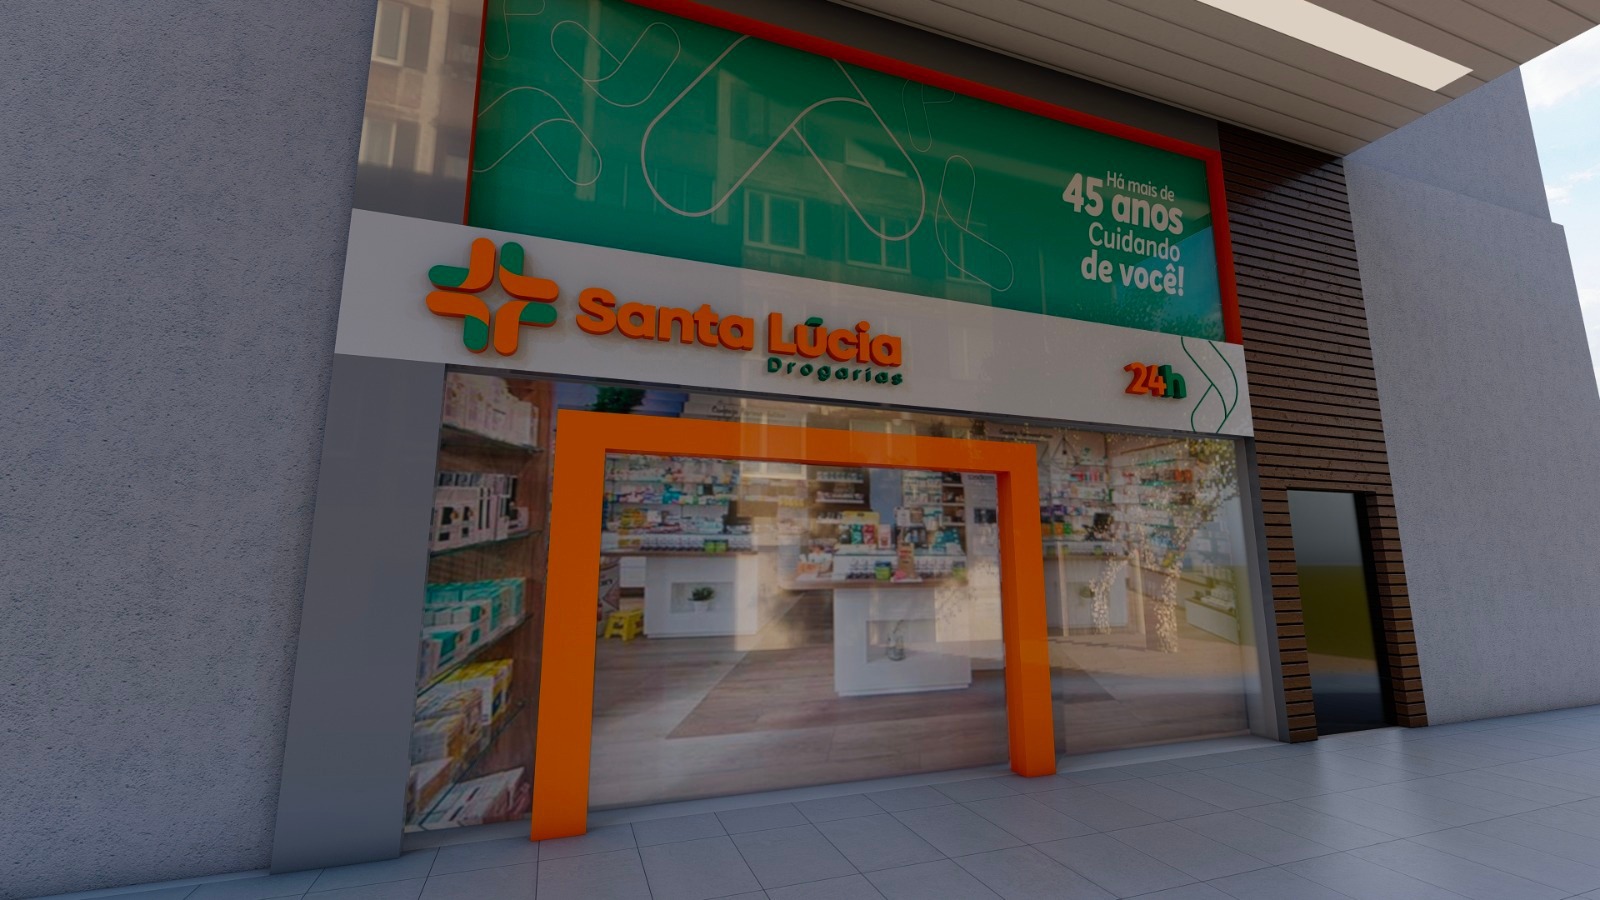 Saúde e oportunidades de trabalho: Drogaria São Paulo expande sua